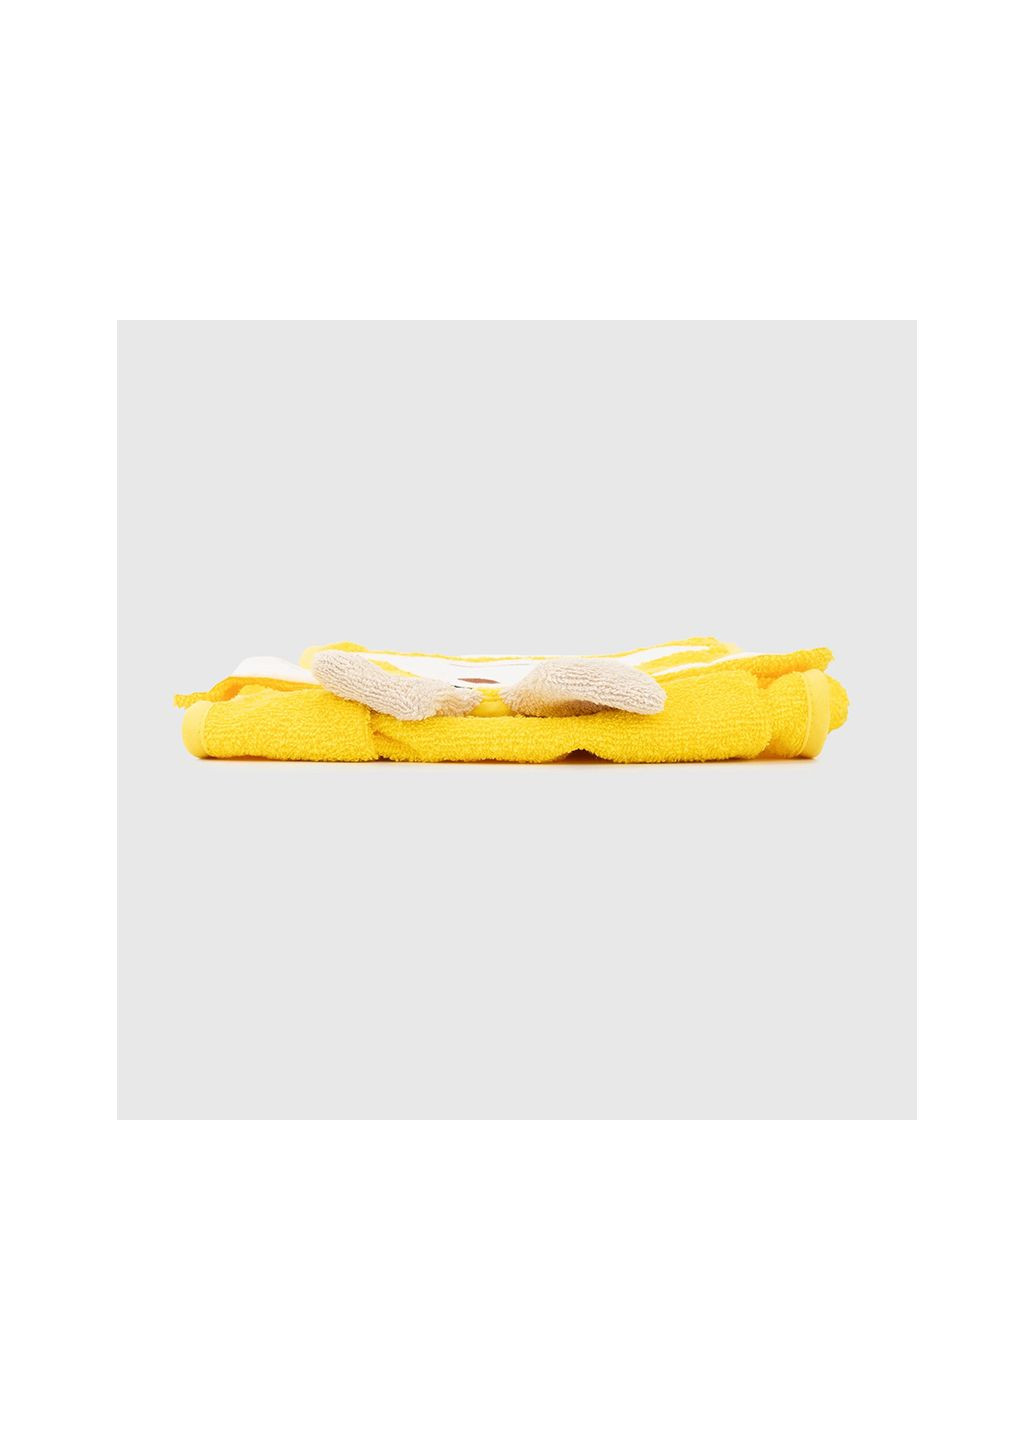 Ramel полотенце желтый производство - Турция